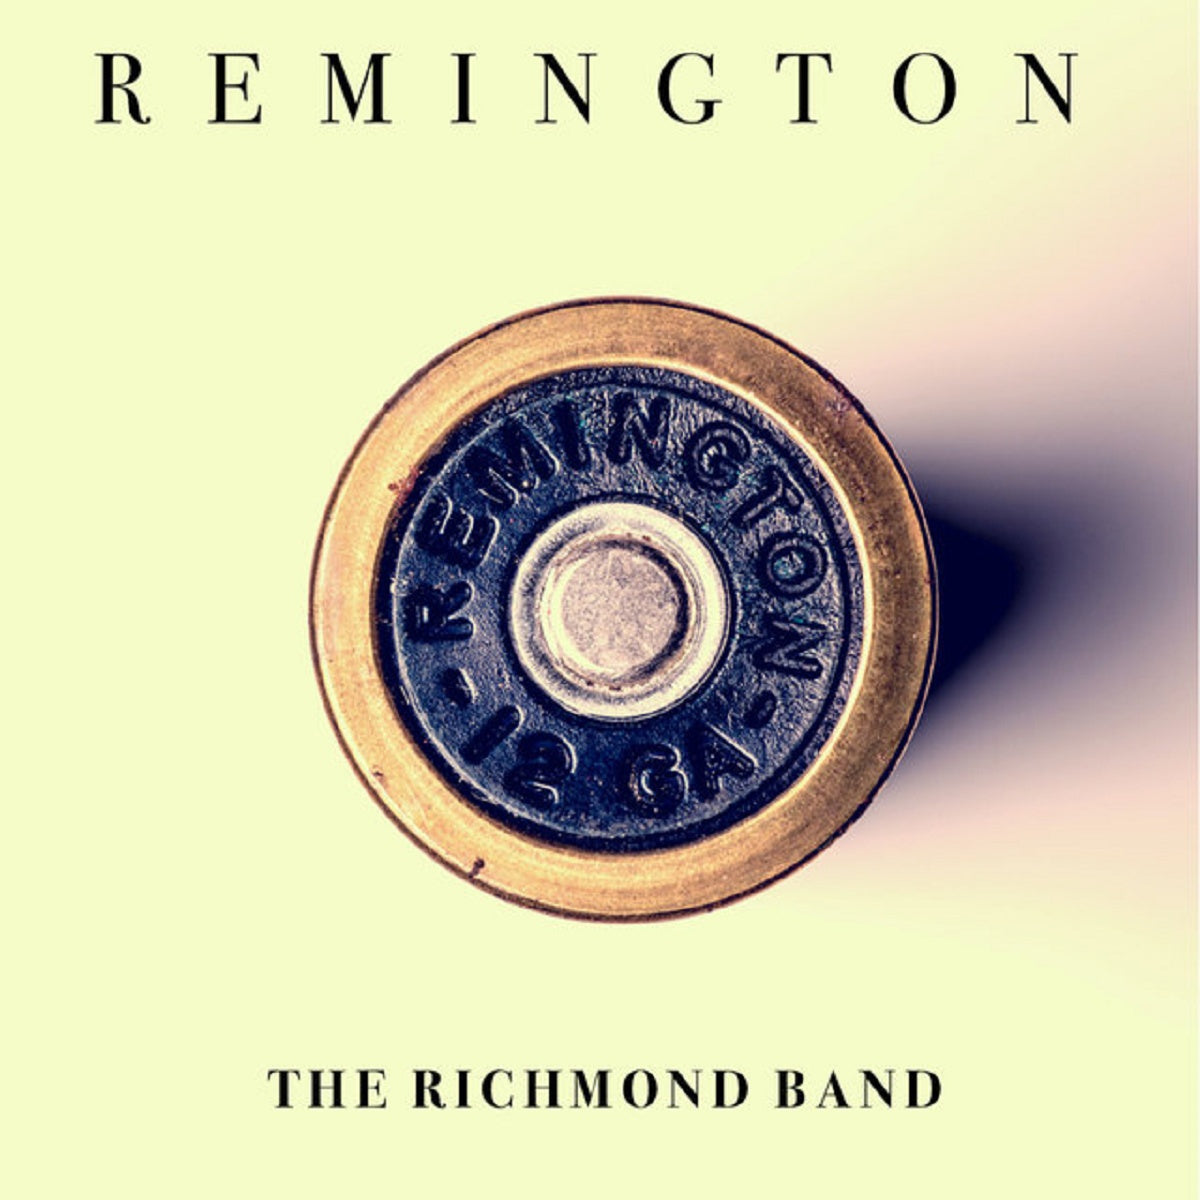 The Richmond Band – ‘Remington’